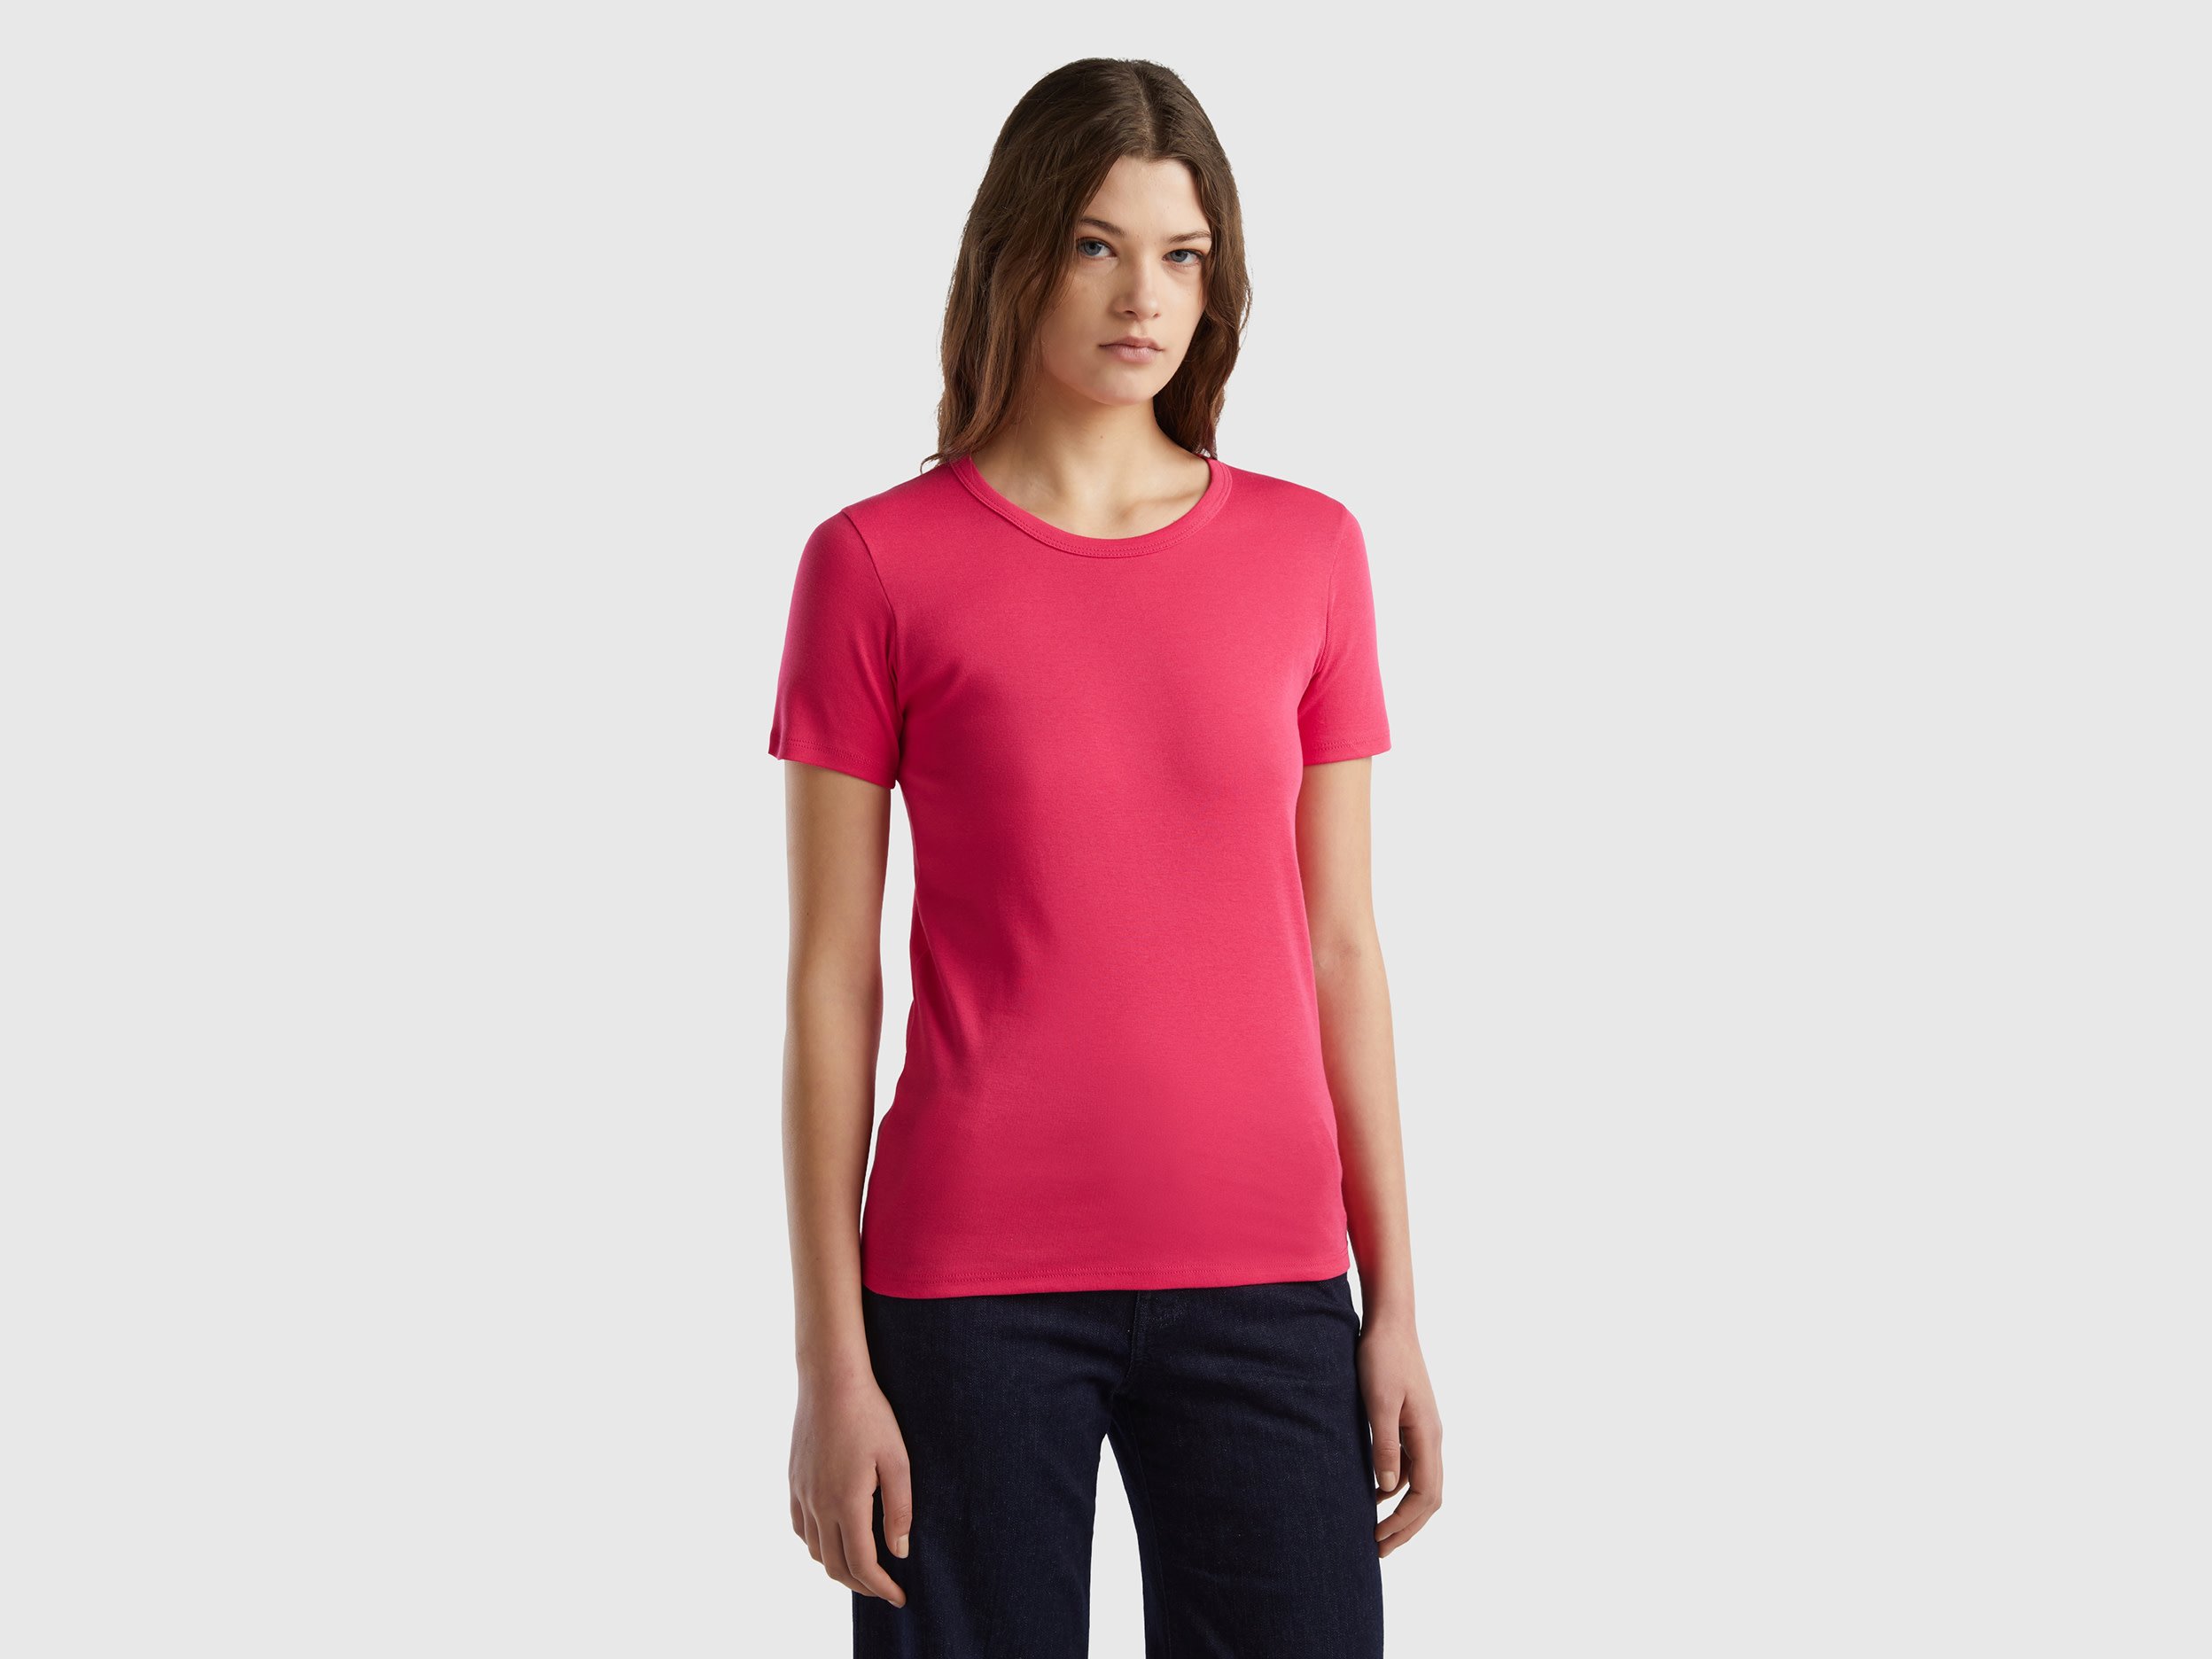 Benetton, Long Fiber Cotton T-shirt, size XS, Fuchsia, Women